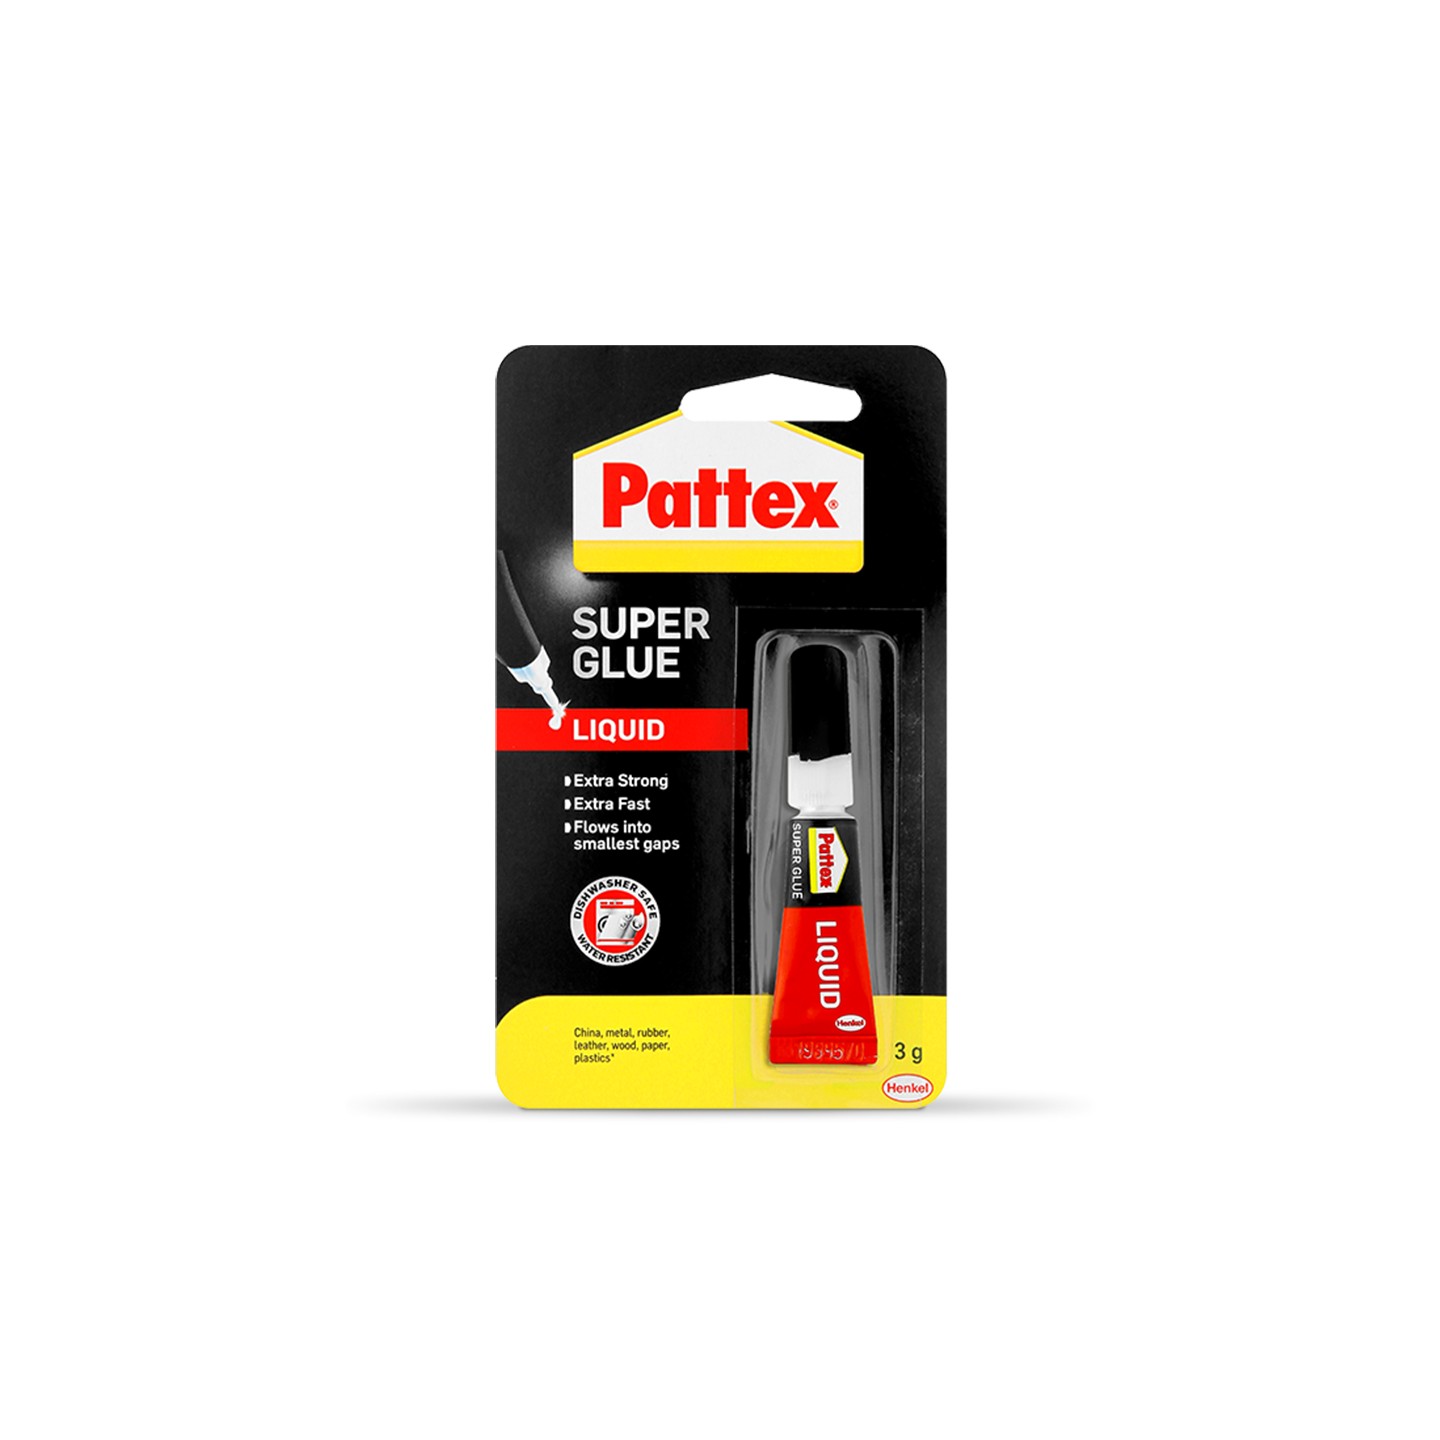 Pattex Super Glue Liquid